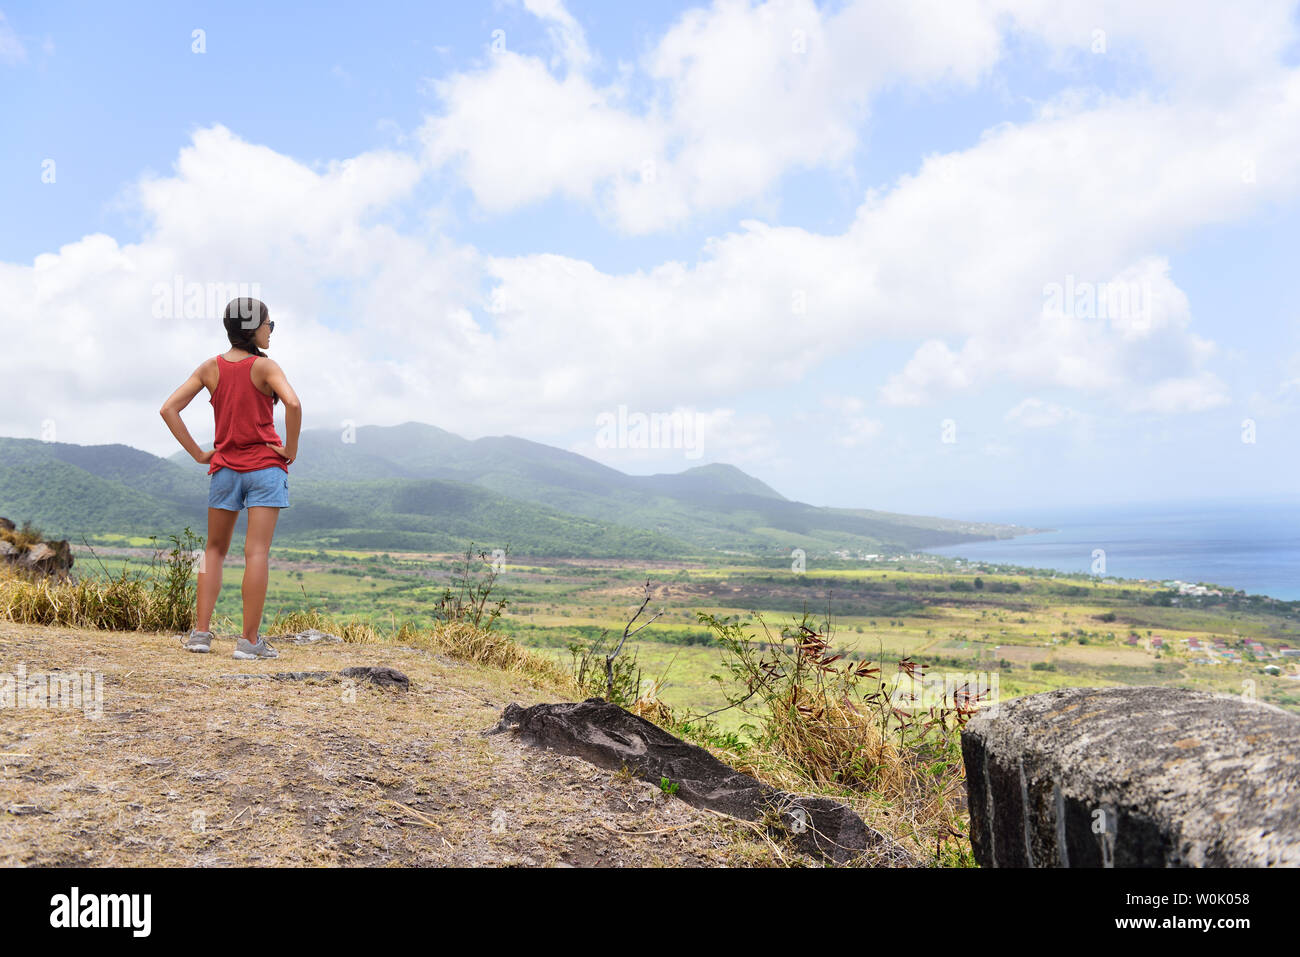 Escursionismo donna sul viaggio escursione durante la crociera di vacanza guardando a St Kitts e Nevis paesaggio. Caraibi la natura durante le vacanze estive. Giovane ragazza in piedi a Lookout guardando viewpoint. Foto Stock